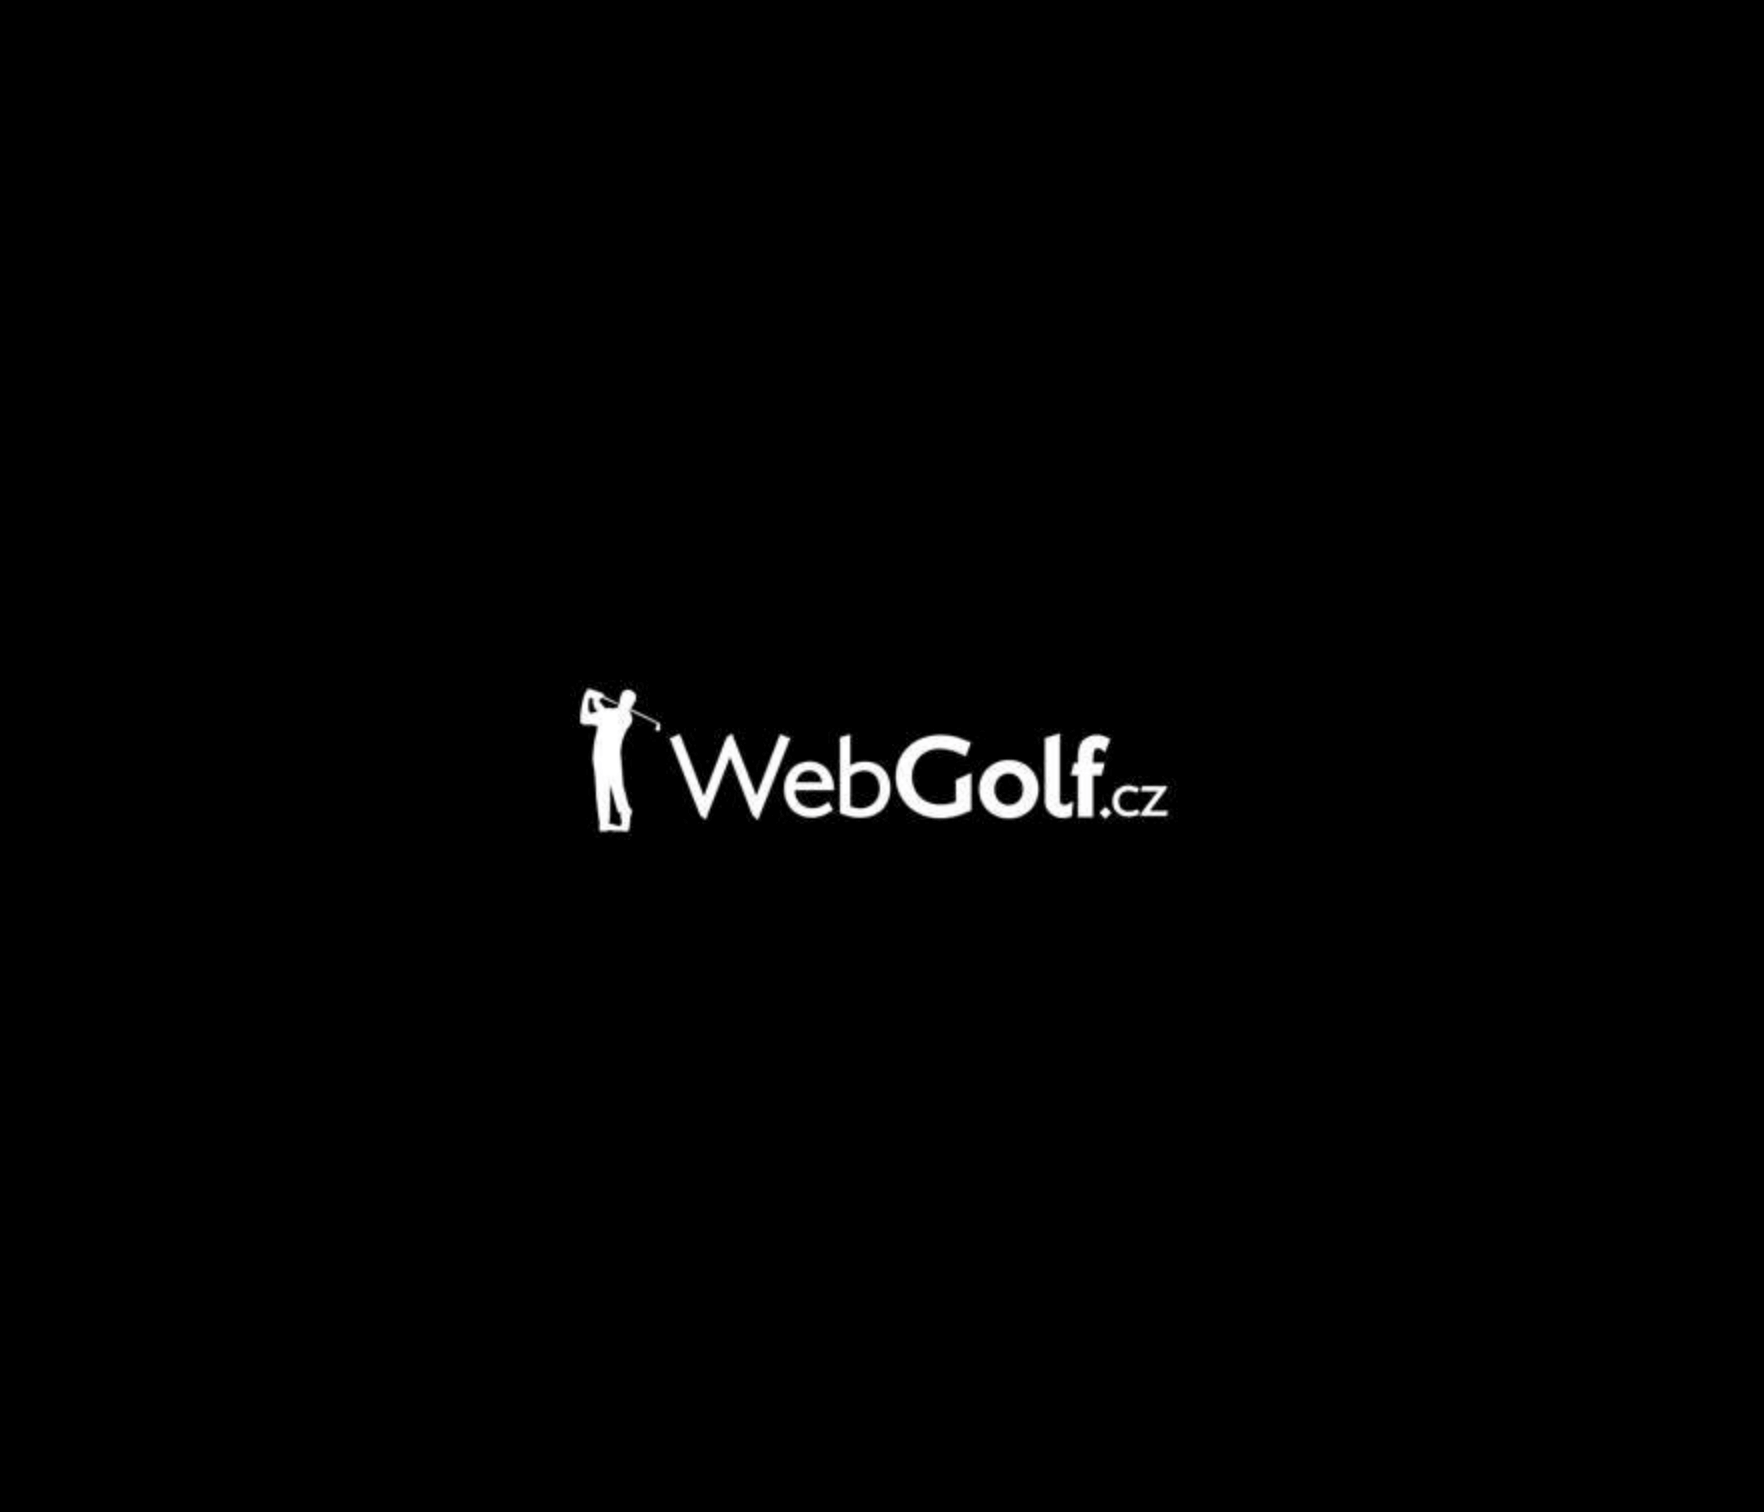 WebGolf.cz logo